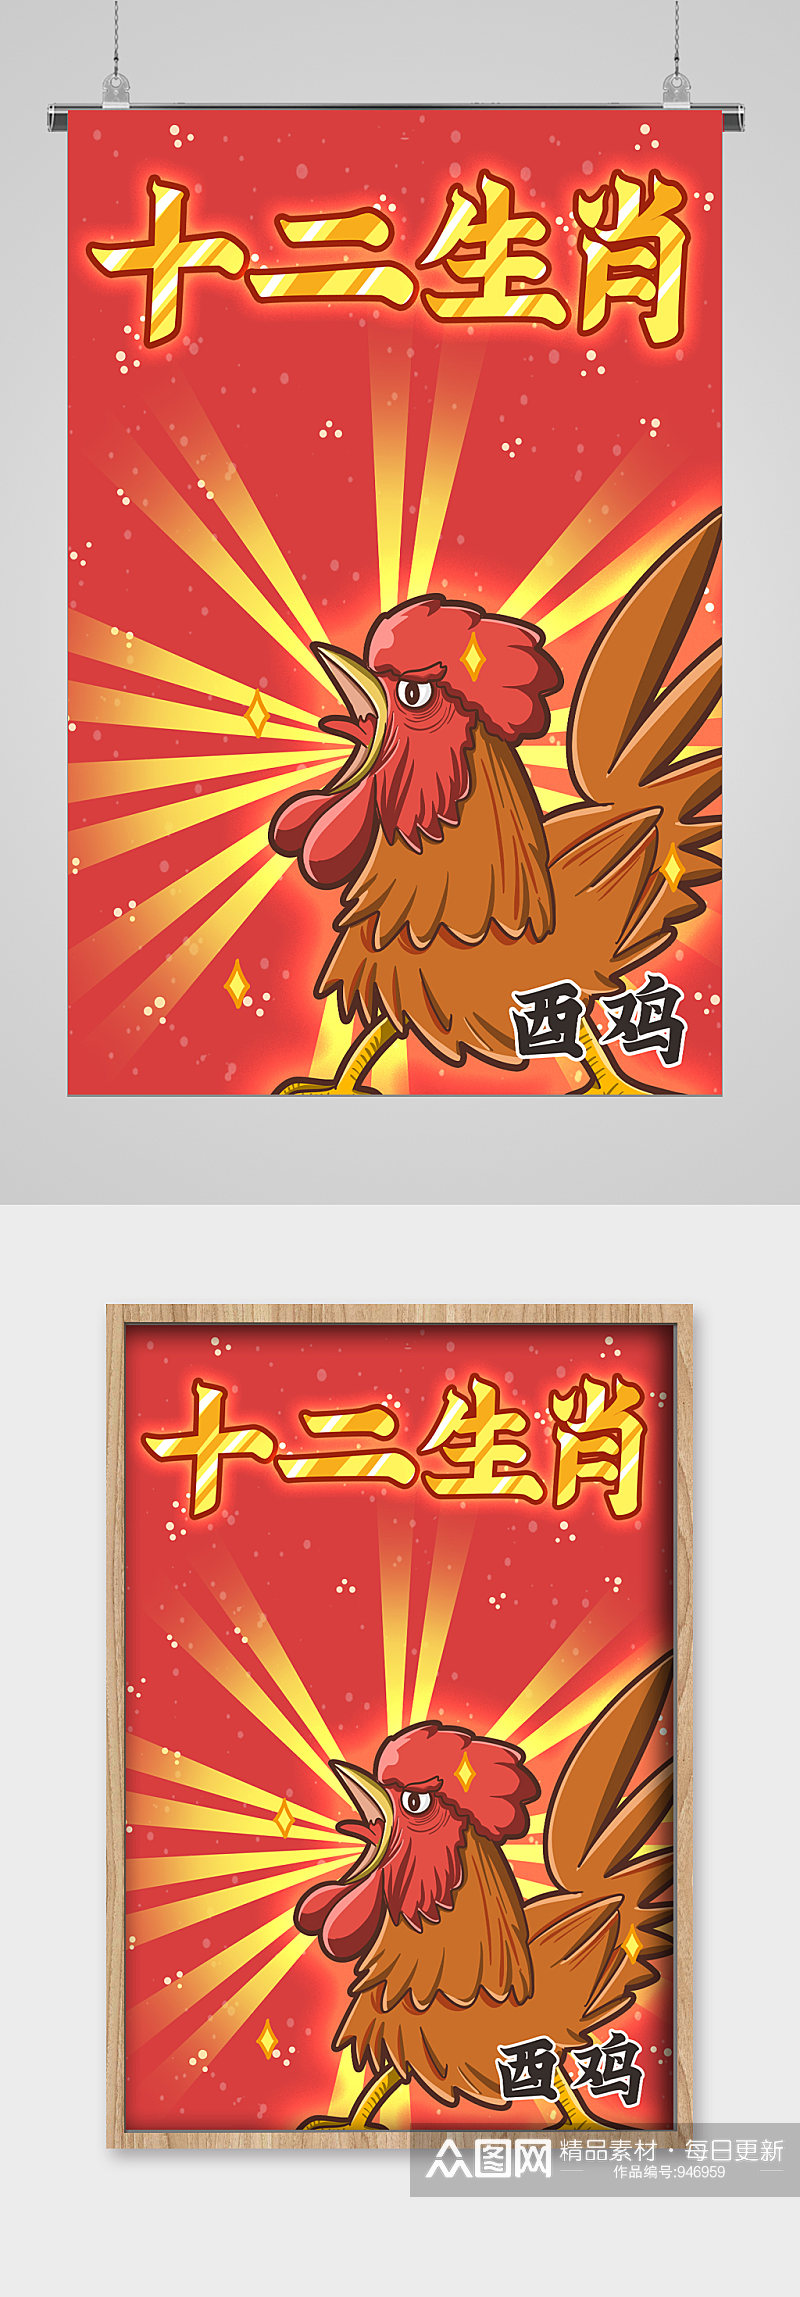 十二生肖公鸡宣传海报素材